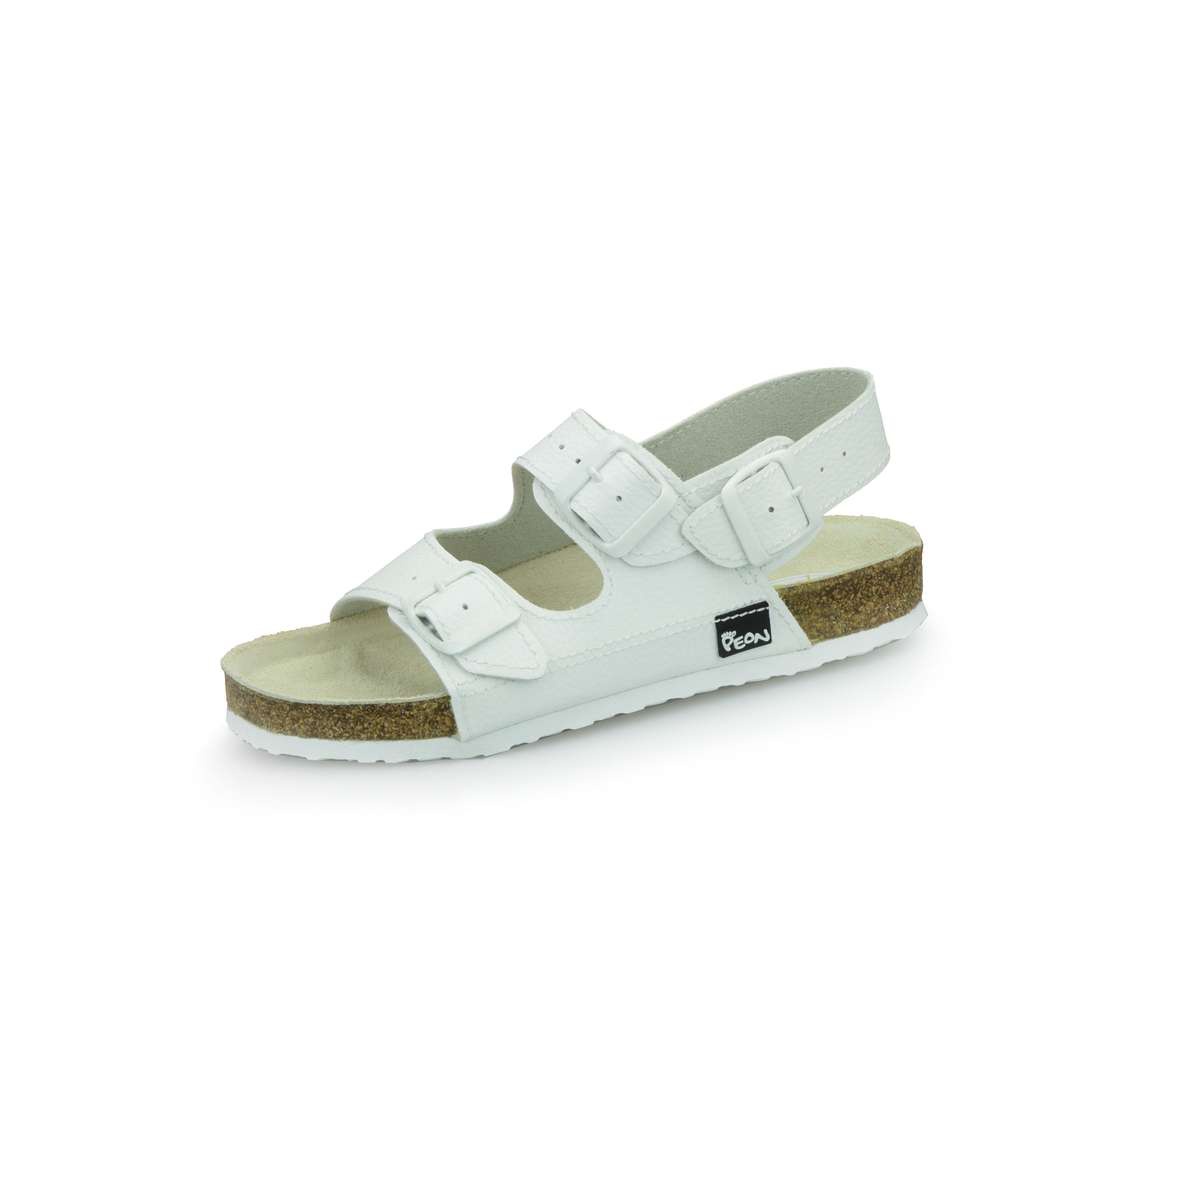 PEON PE/131-5 bílé dámské zdravotní korkové sandále BARVA: BÍLÁ, VELIKOST: 38